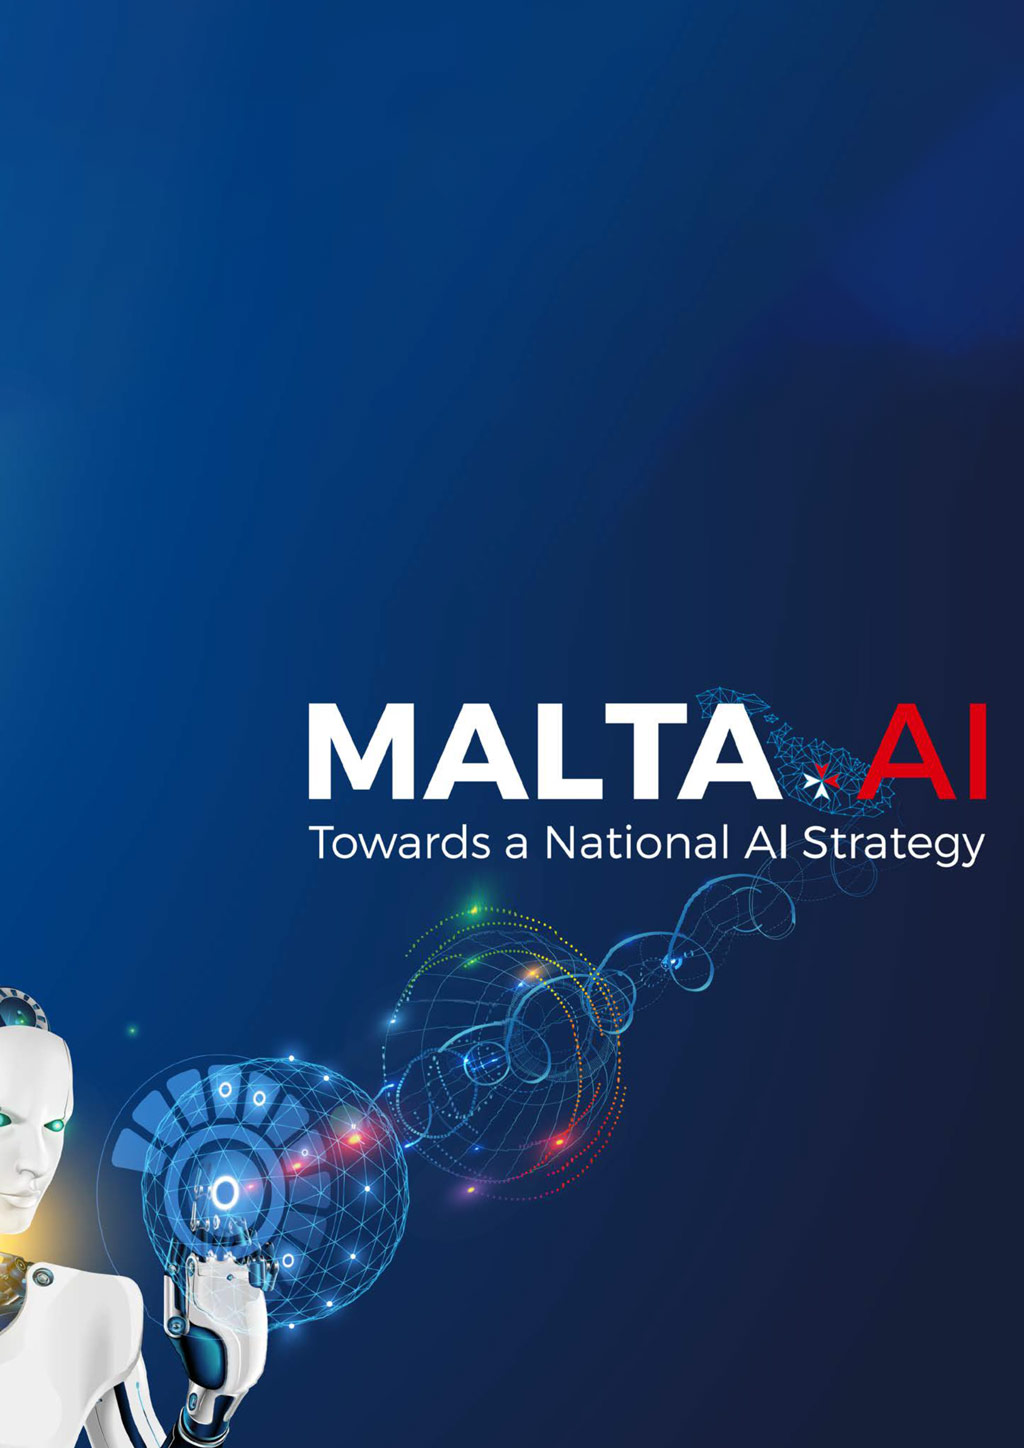 Malta AI Vision - Towards a National AI Strategy